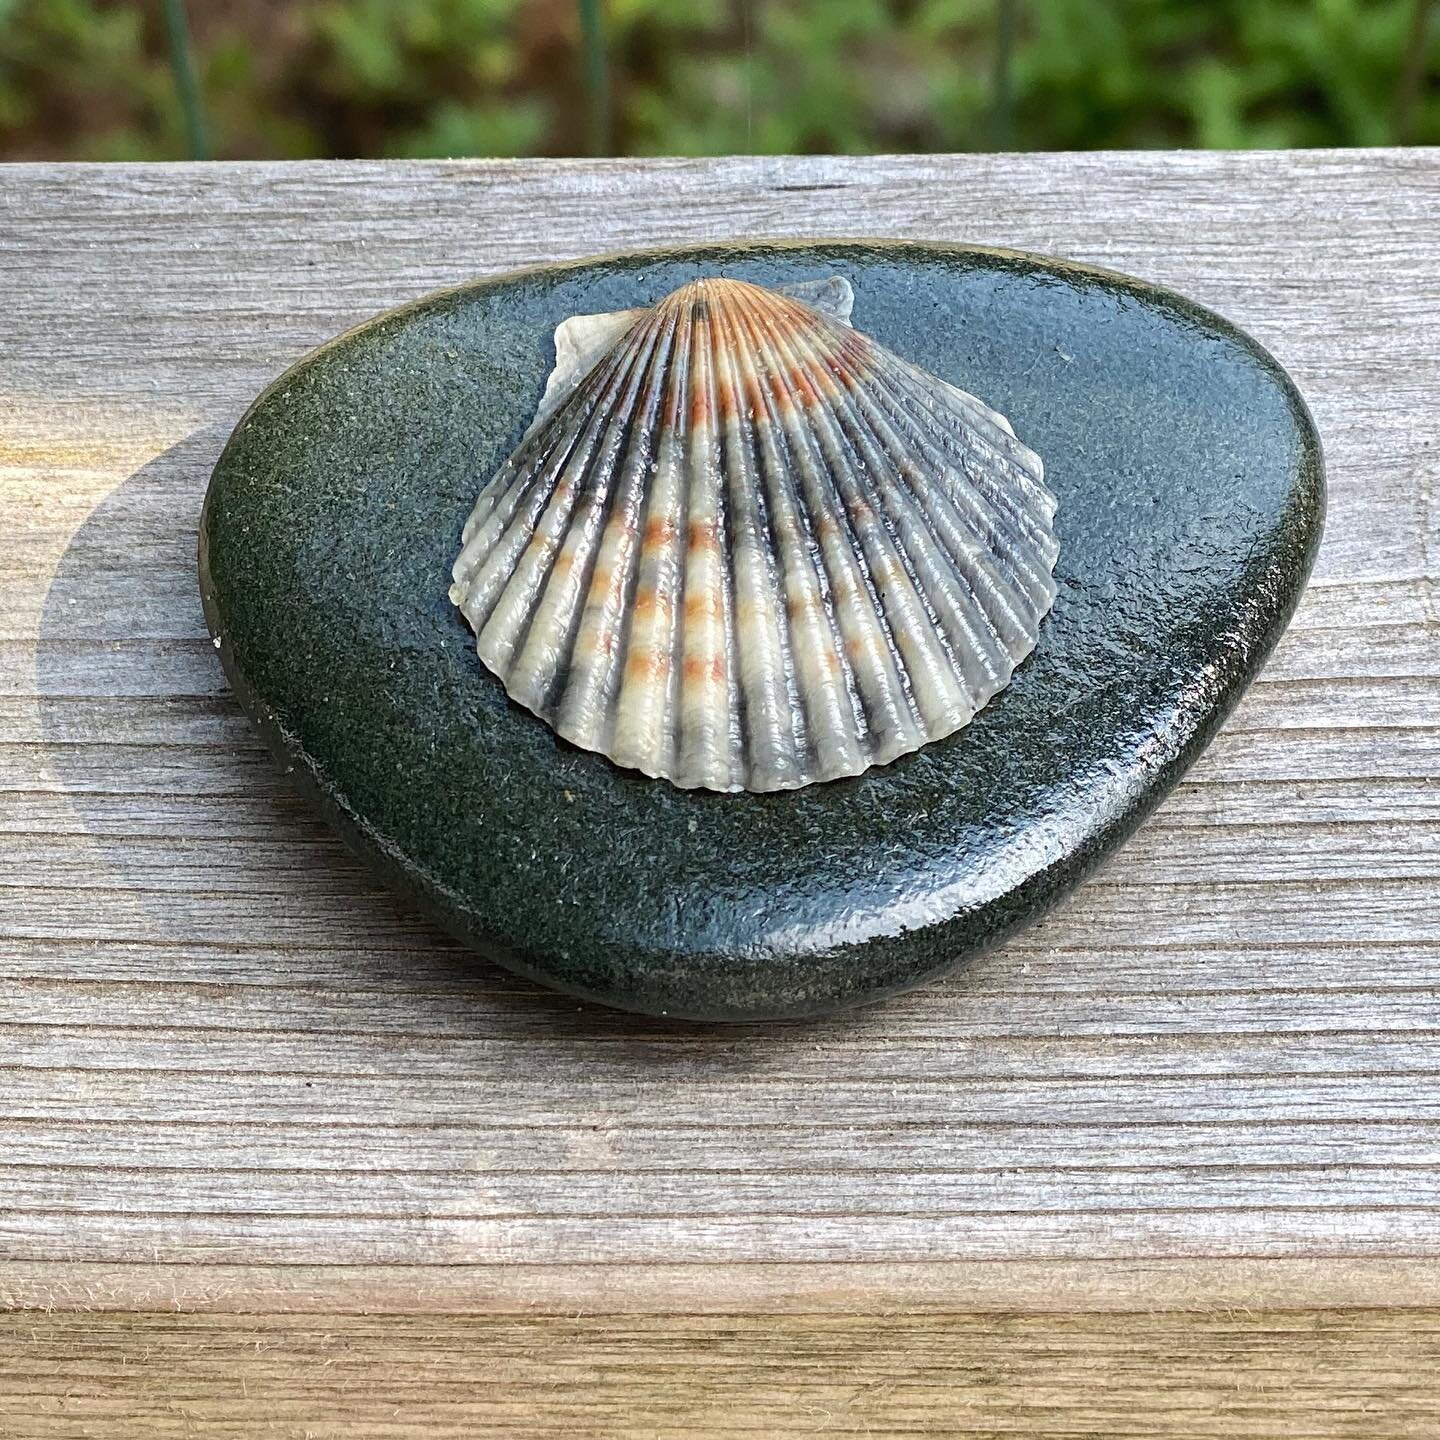 A beautiful bay scallop shell